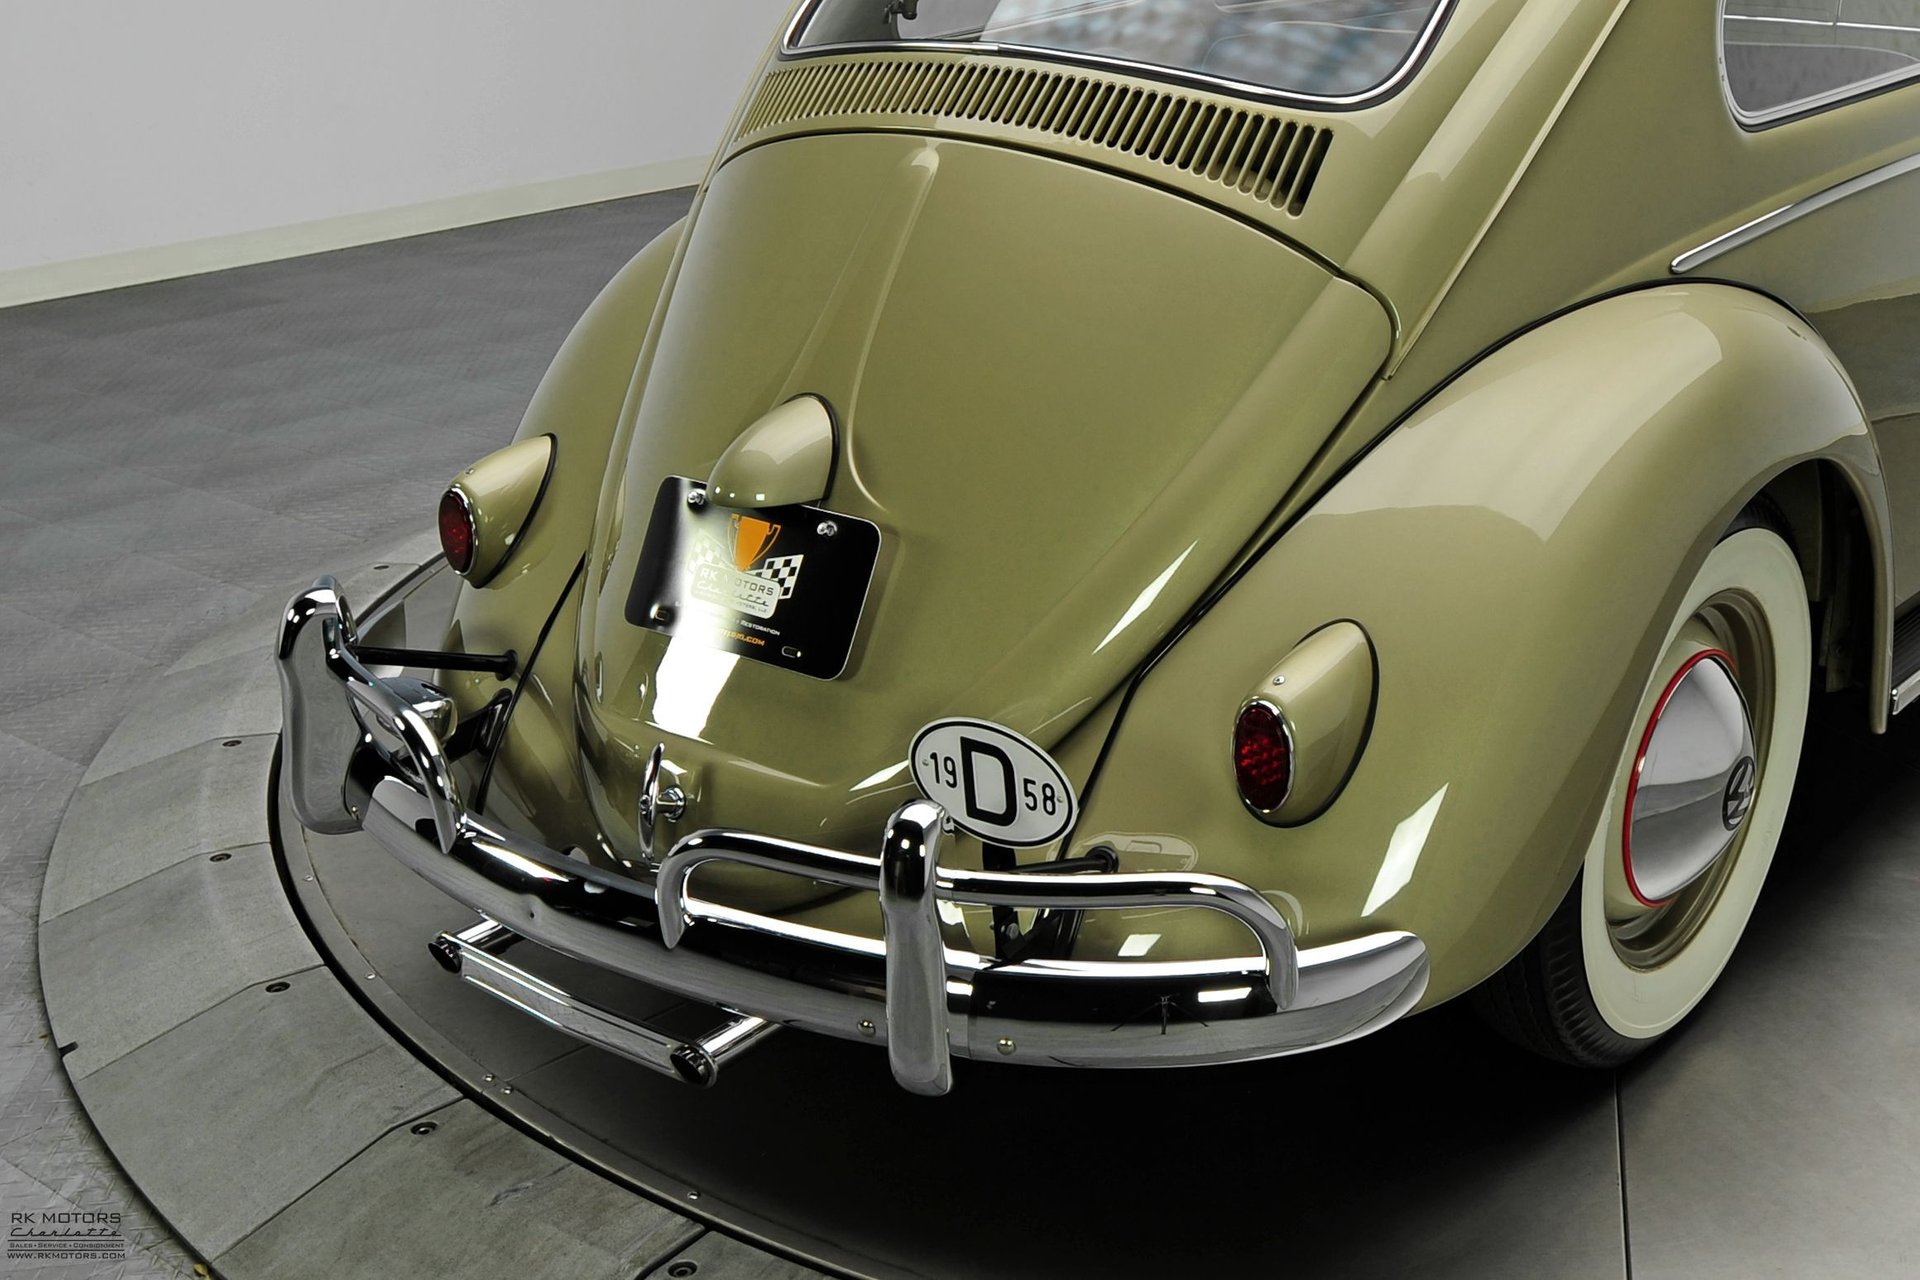 For Sale 1958 Volkswagen Type 1 Beetle